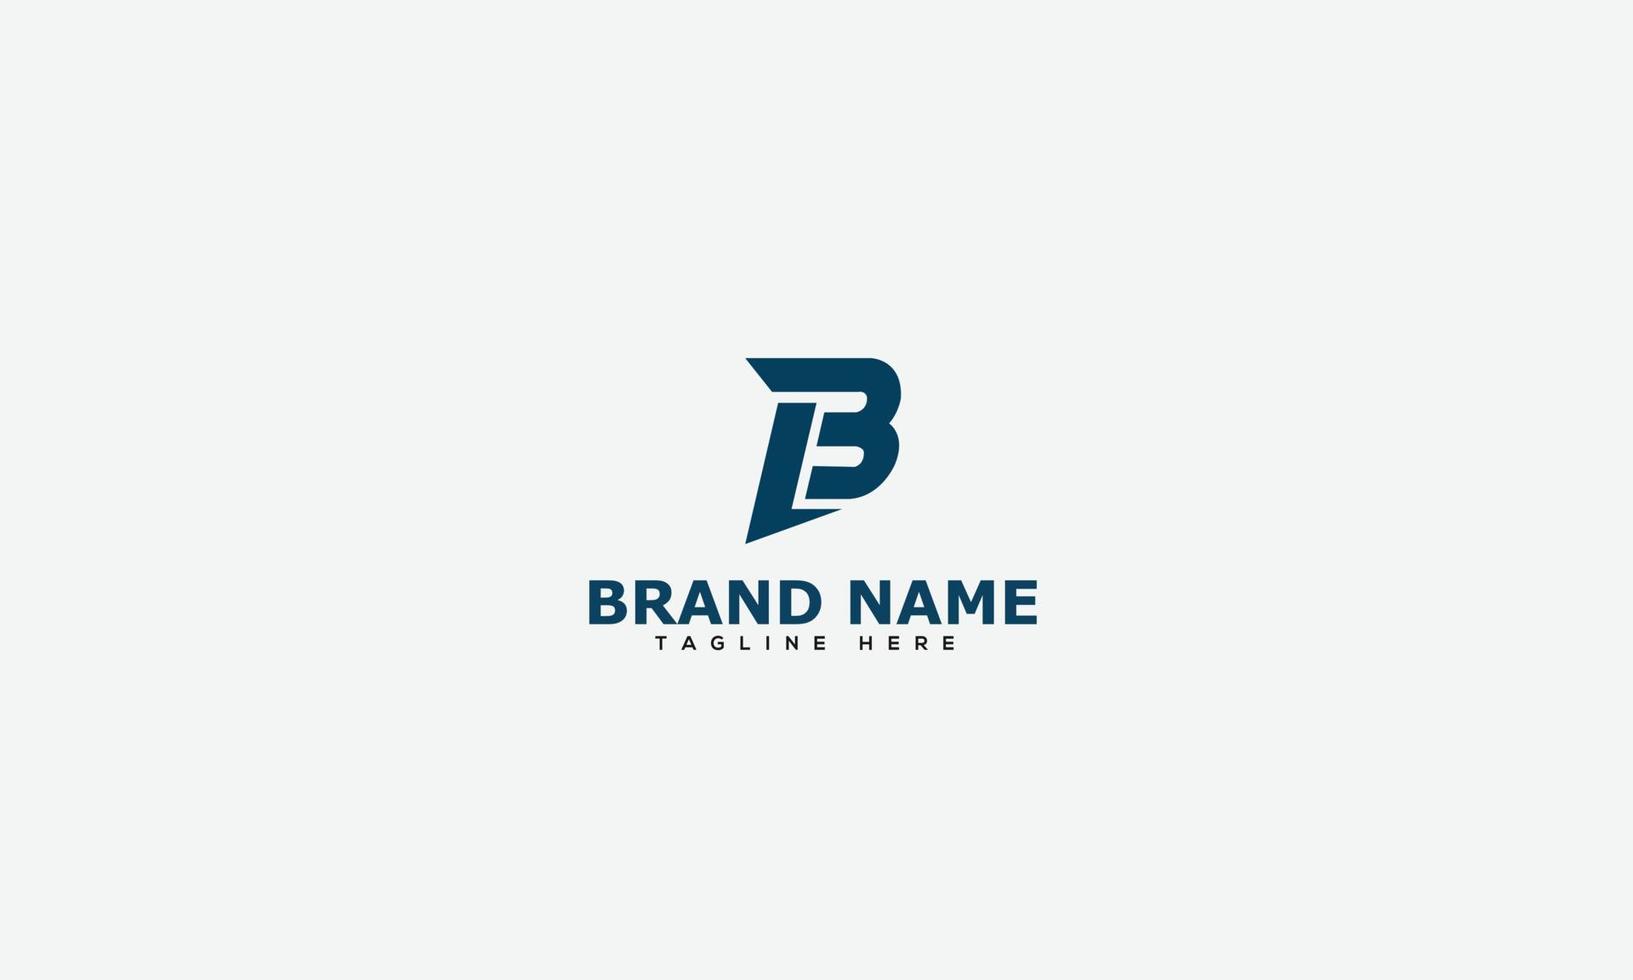 elemento de marca gráfico vectorial de plantilla de diseño de logotipo bl. vector